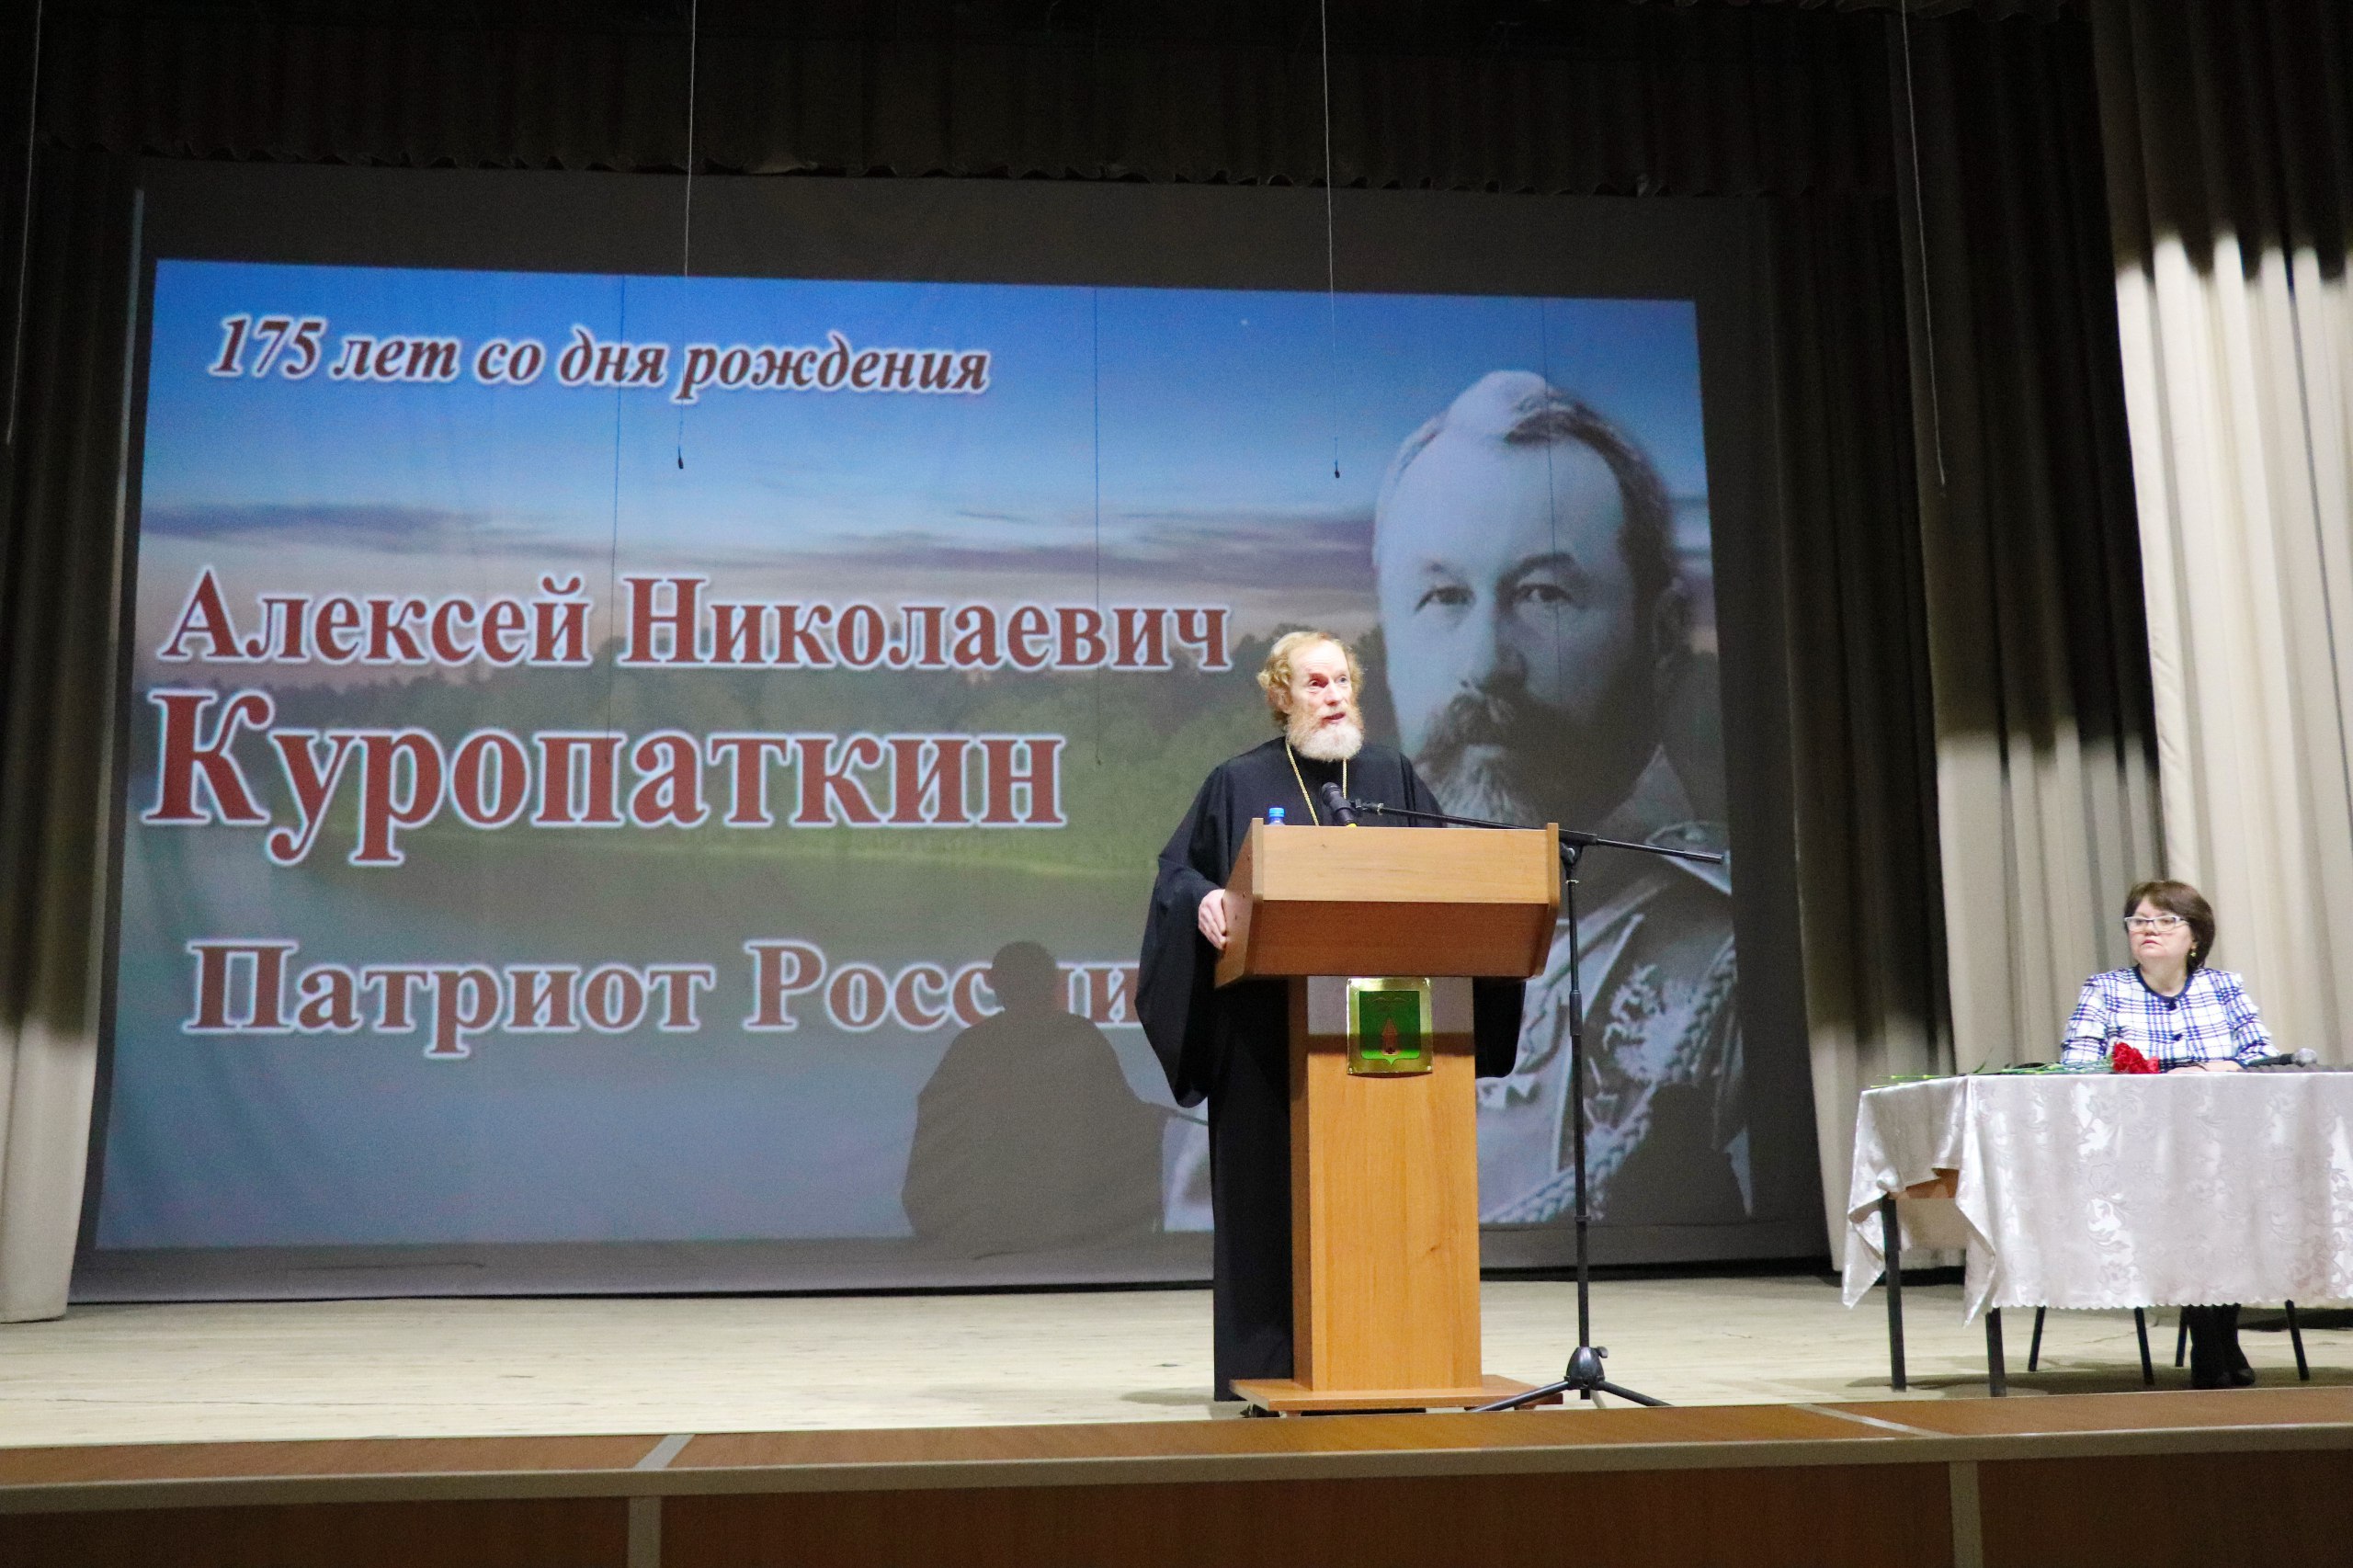 В Тверской области проходят памятные мероприятия, посвящённые военному деятелю Алексею Николаевичу Куропаткину